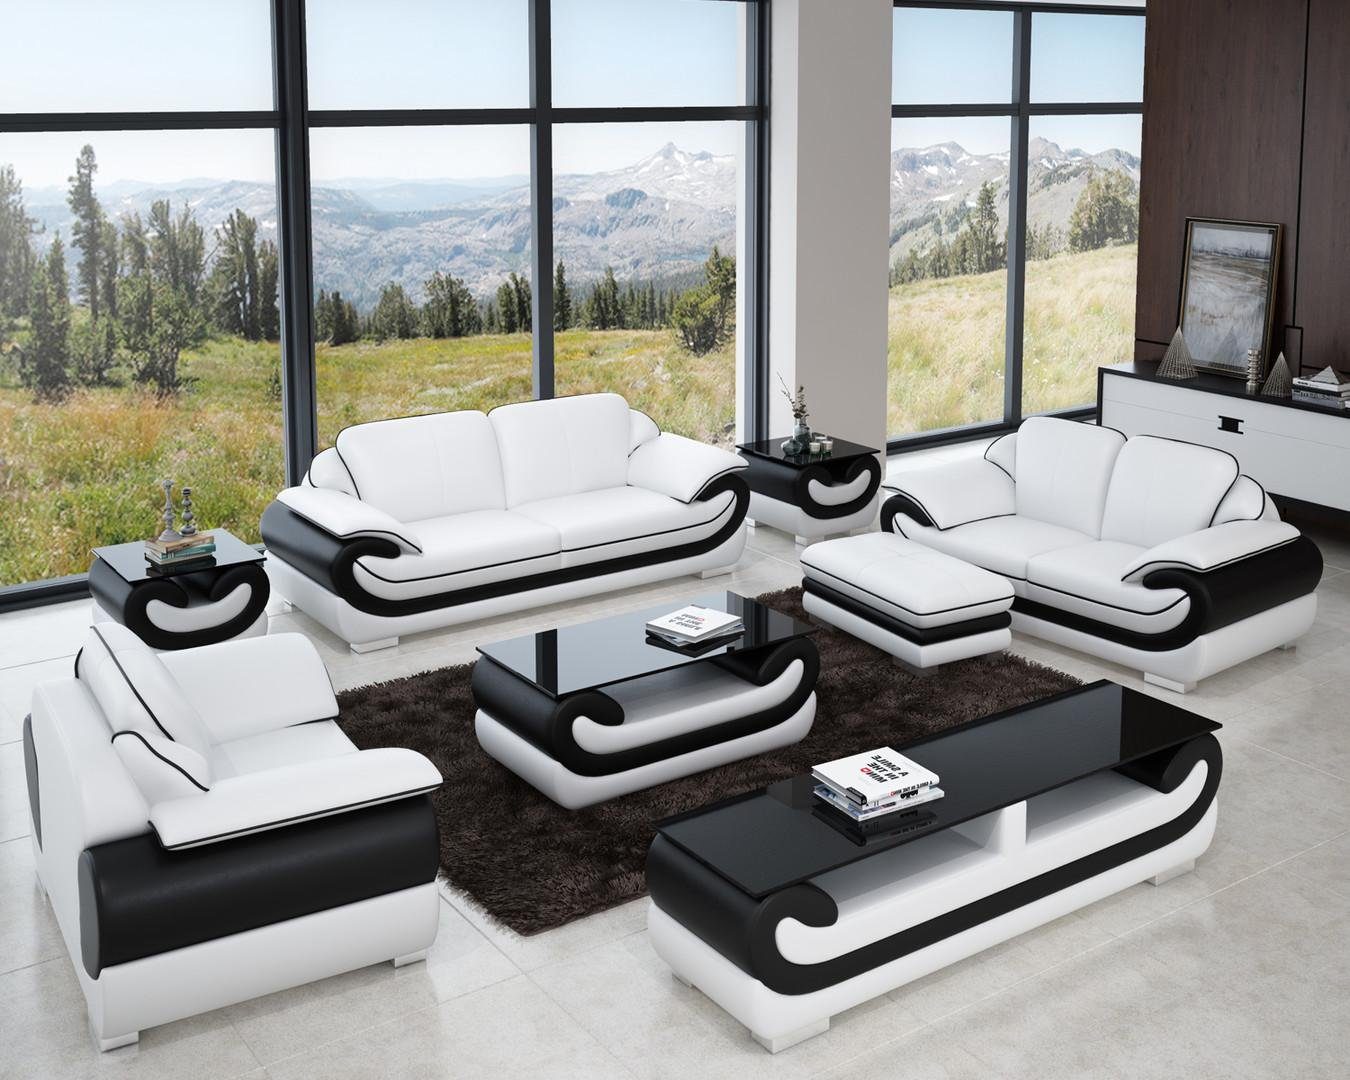 Ledersofa JVmoebel Sofa Couch 3+1+1 in Weiß/Schwarz Made Sitzer Design, Europe Garnitur Wohnlandschaft